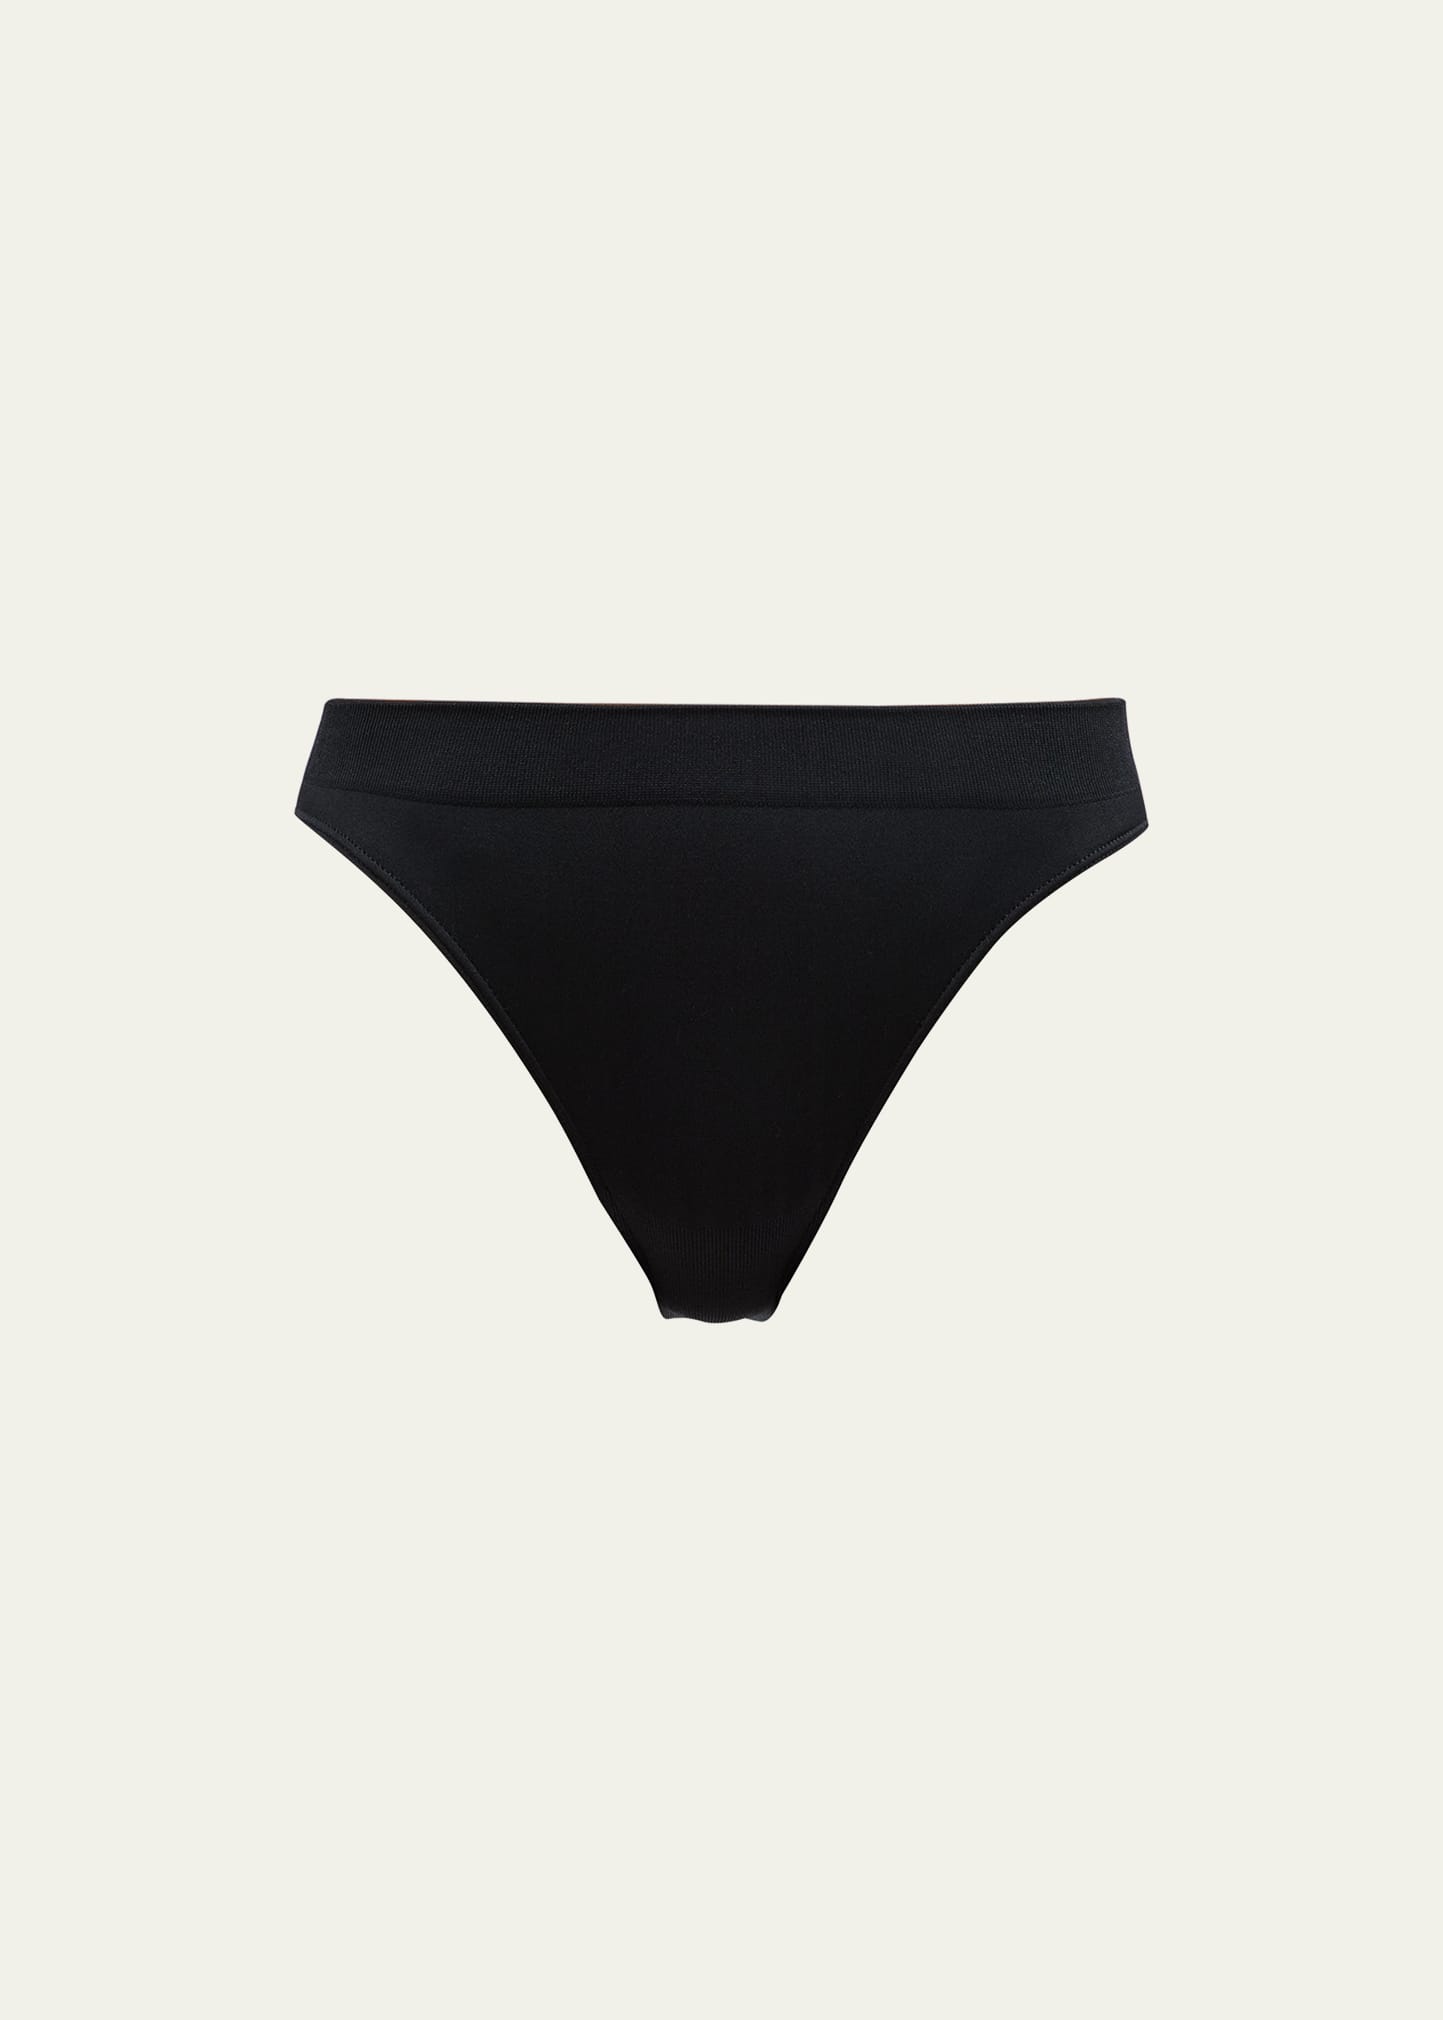 Wacoal B-smooth Seamless Bikini In Black